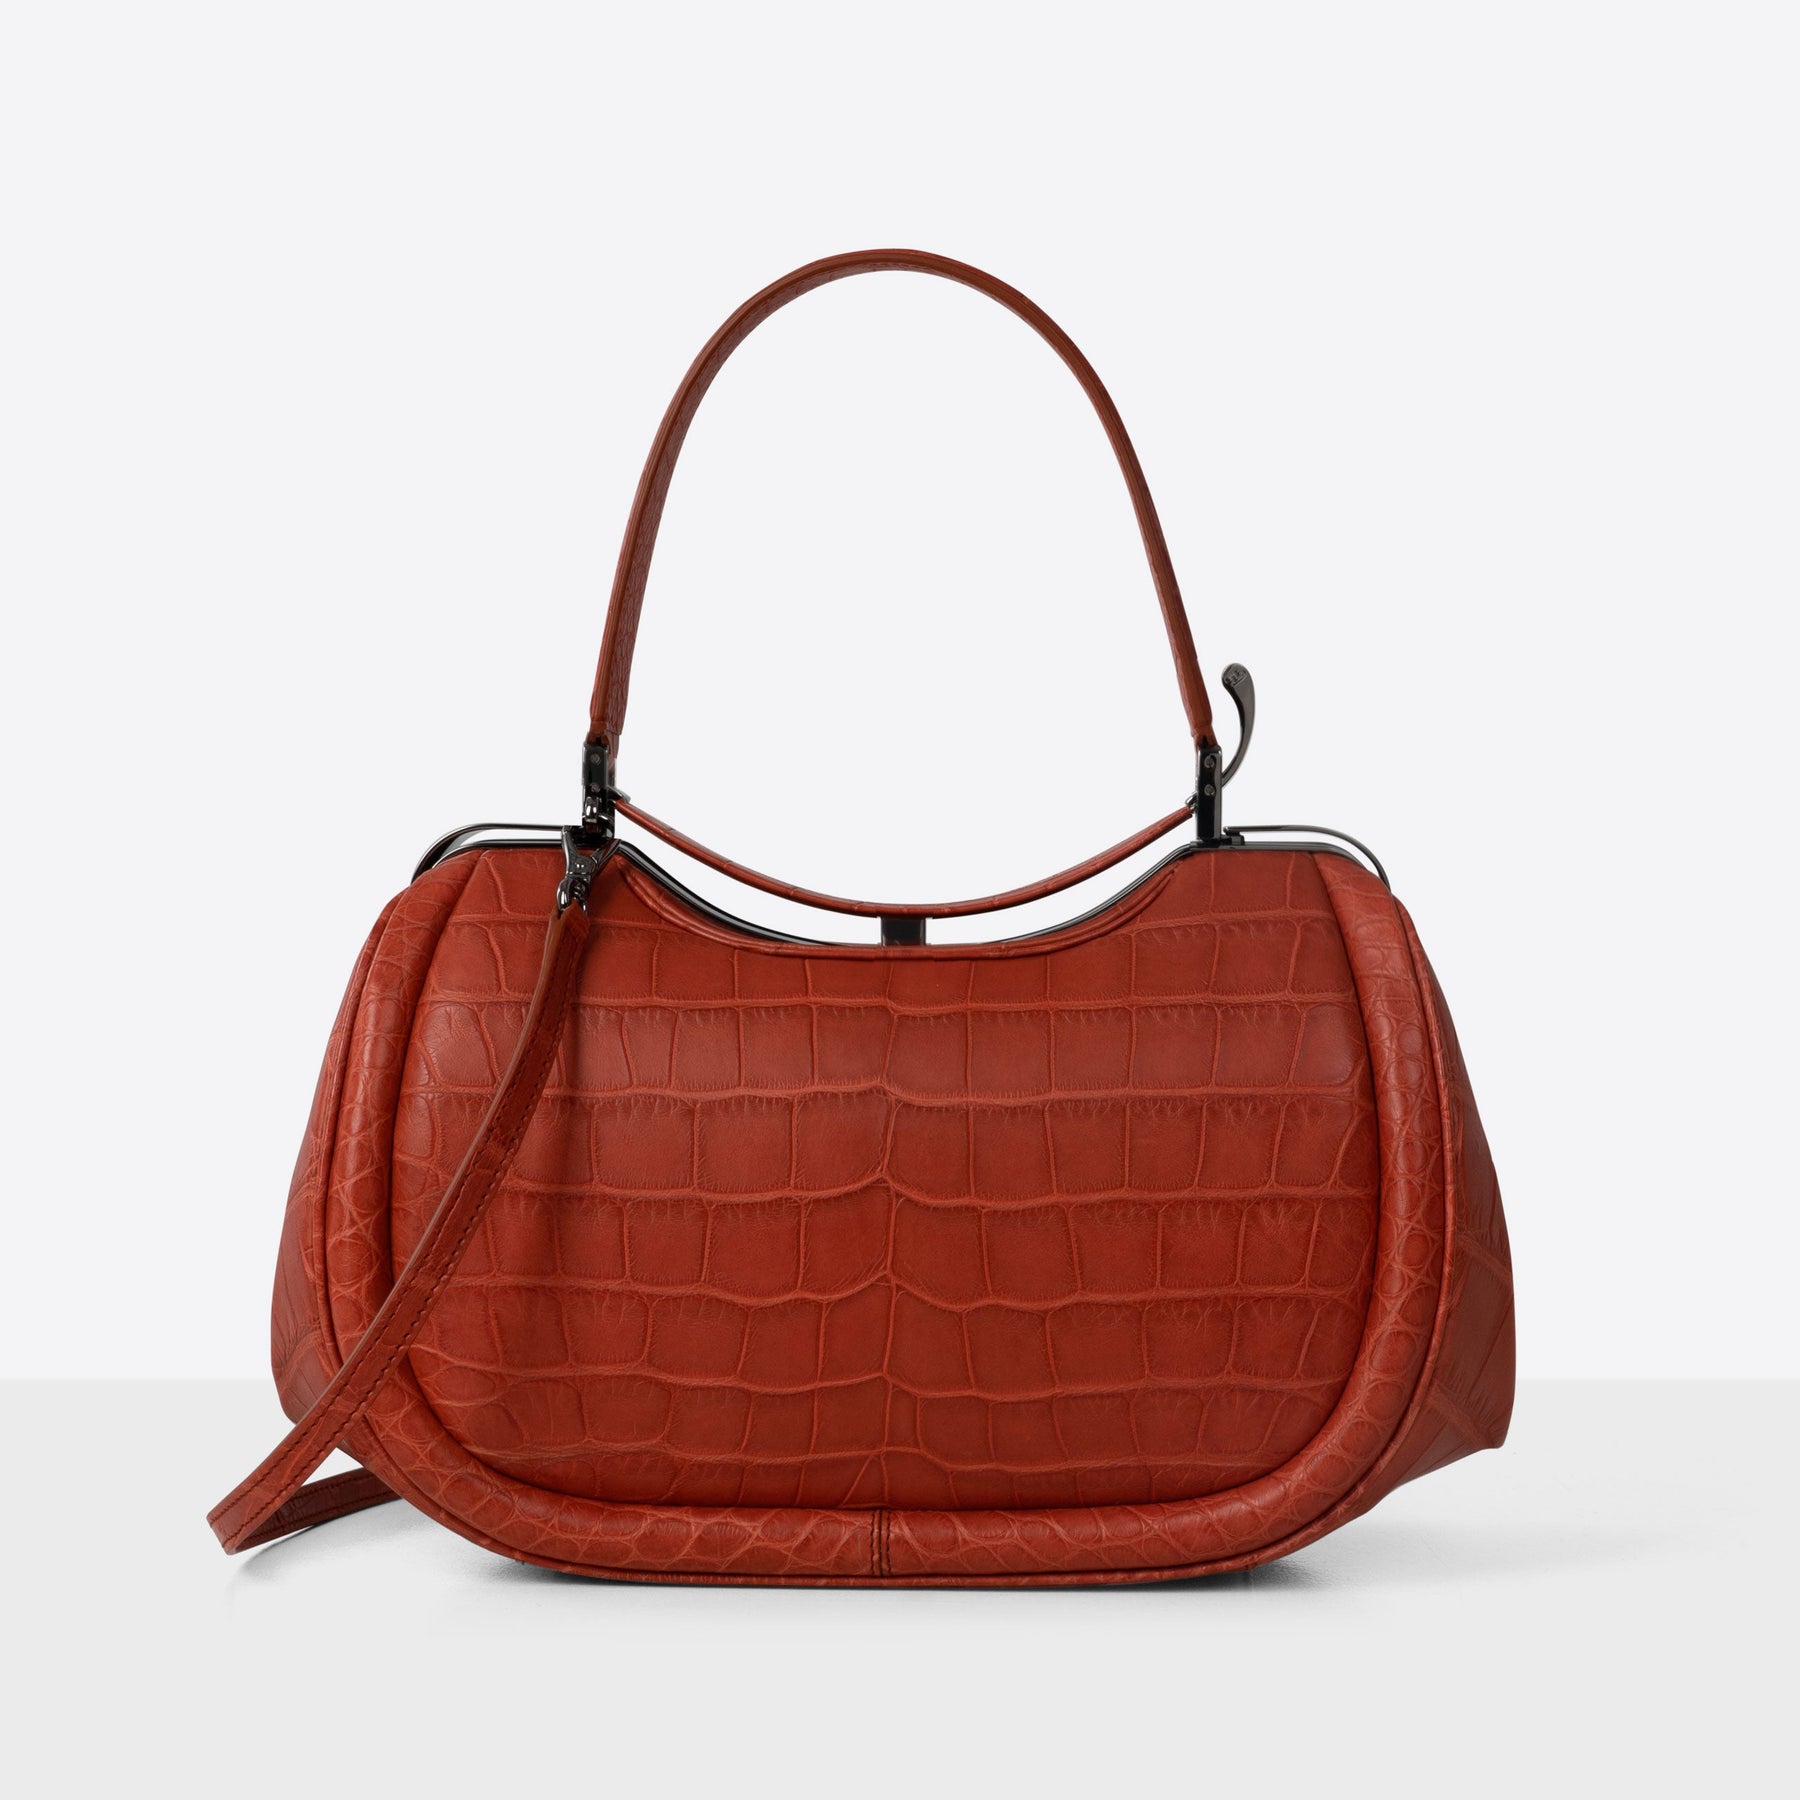 DOTTI Aura handbag in red brick Alligator. Made in Italy